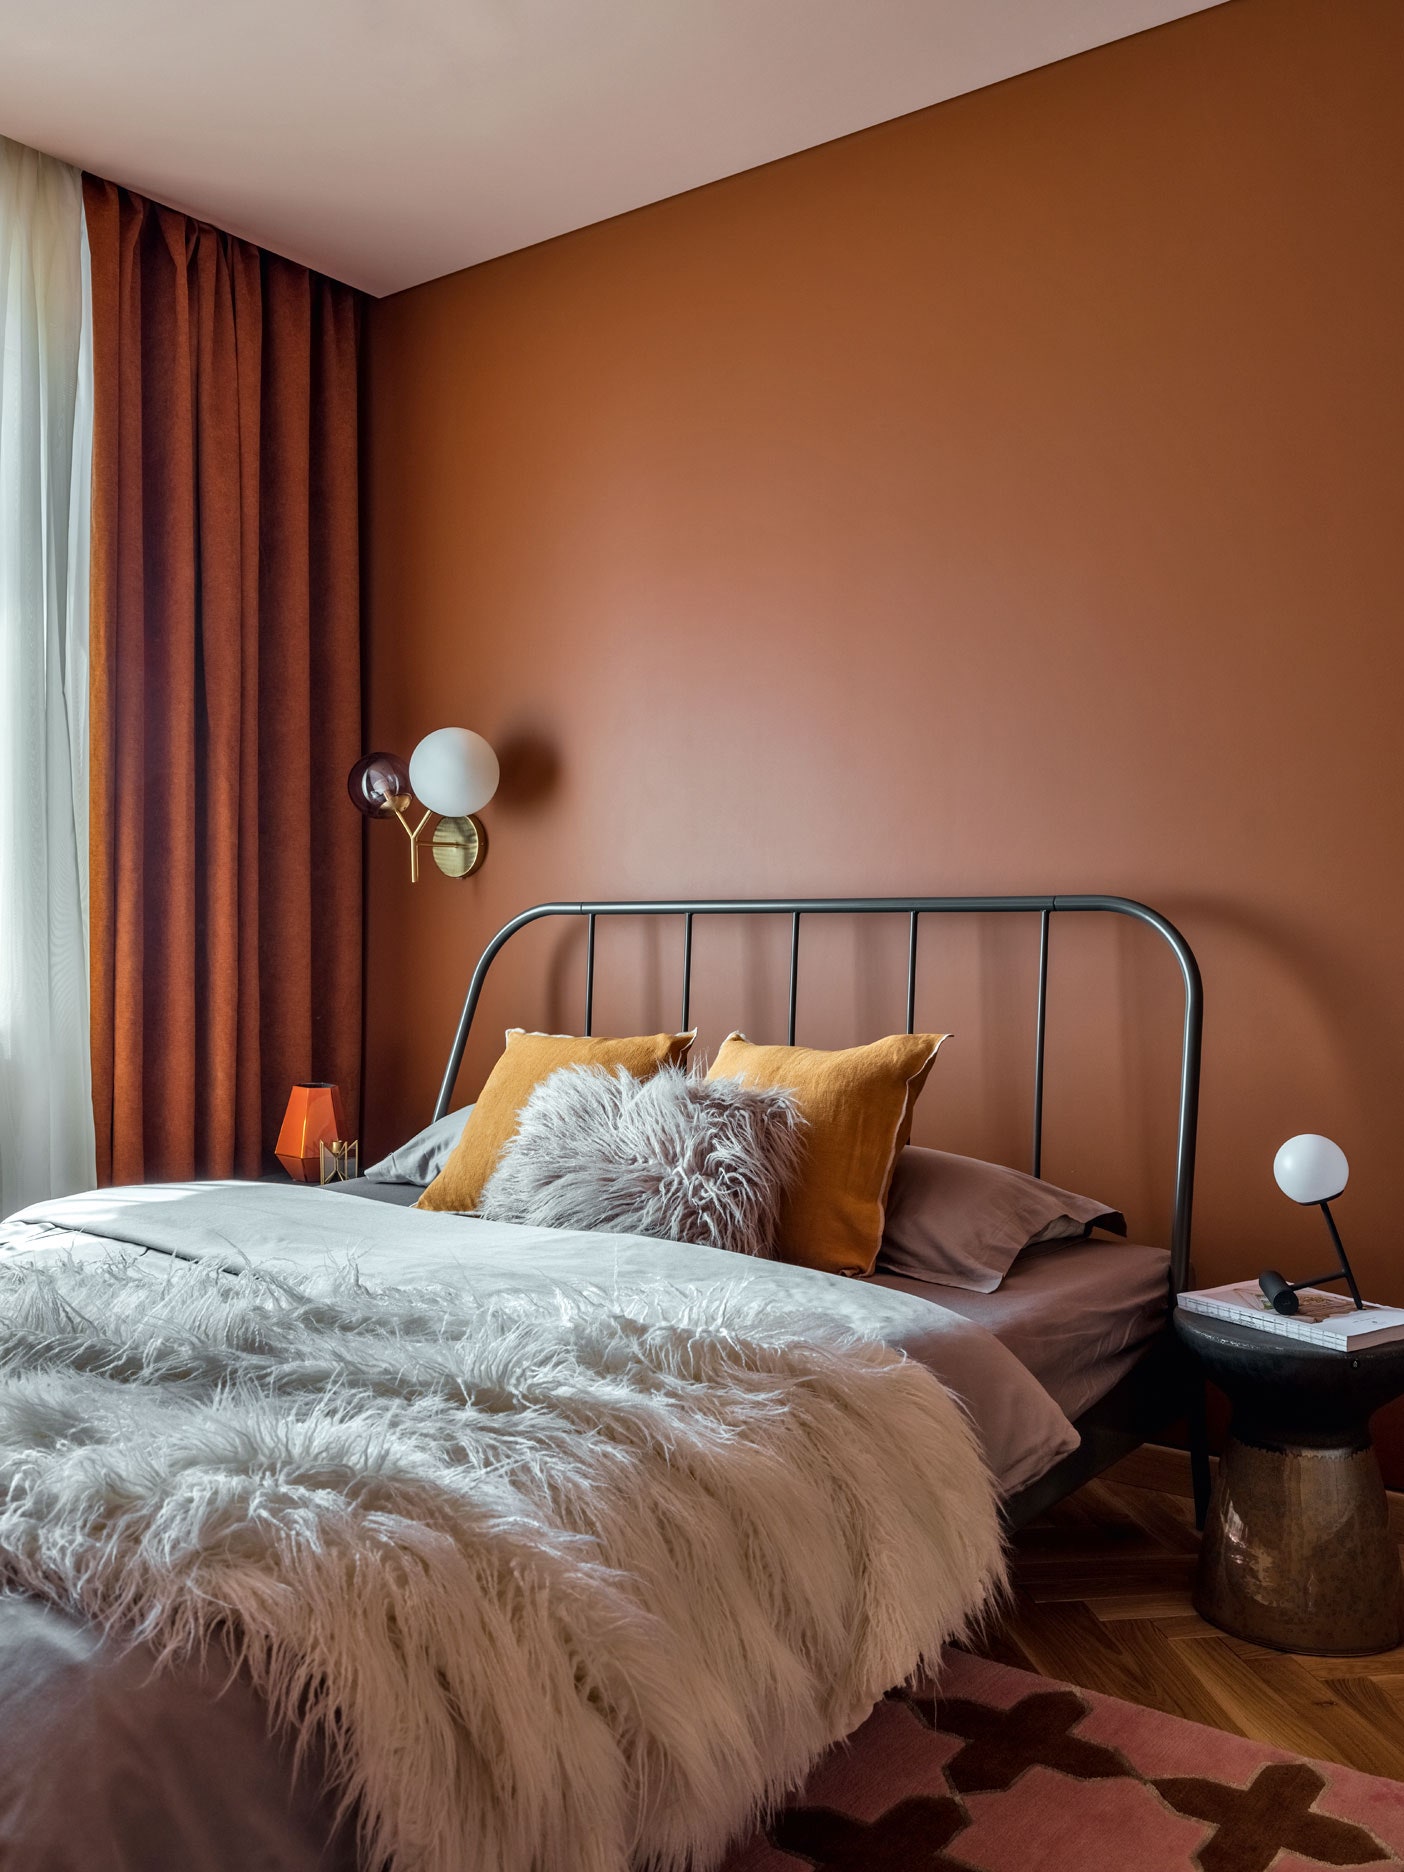 Бюджетная квартира под сдачу 61 м². Спальня. Кровать IKEA меховая подушка и плед Barcelona Design текстиль и настольная...